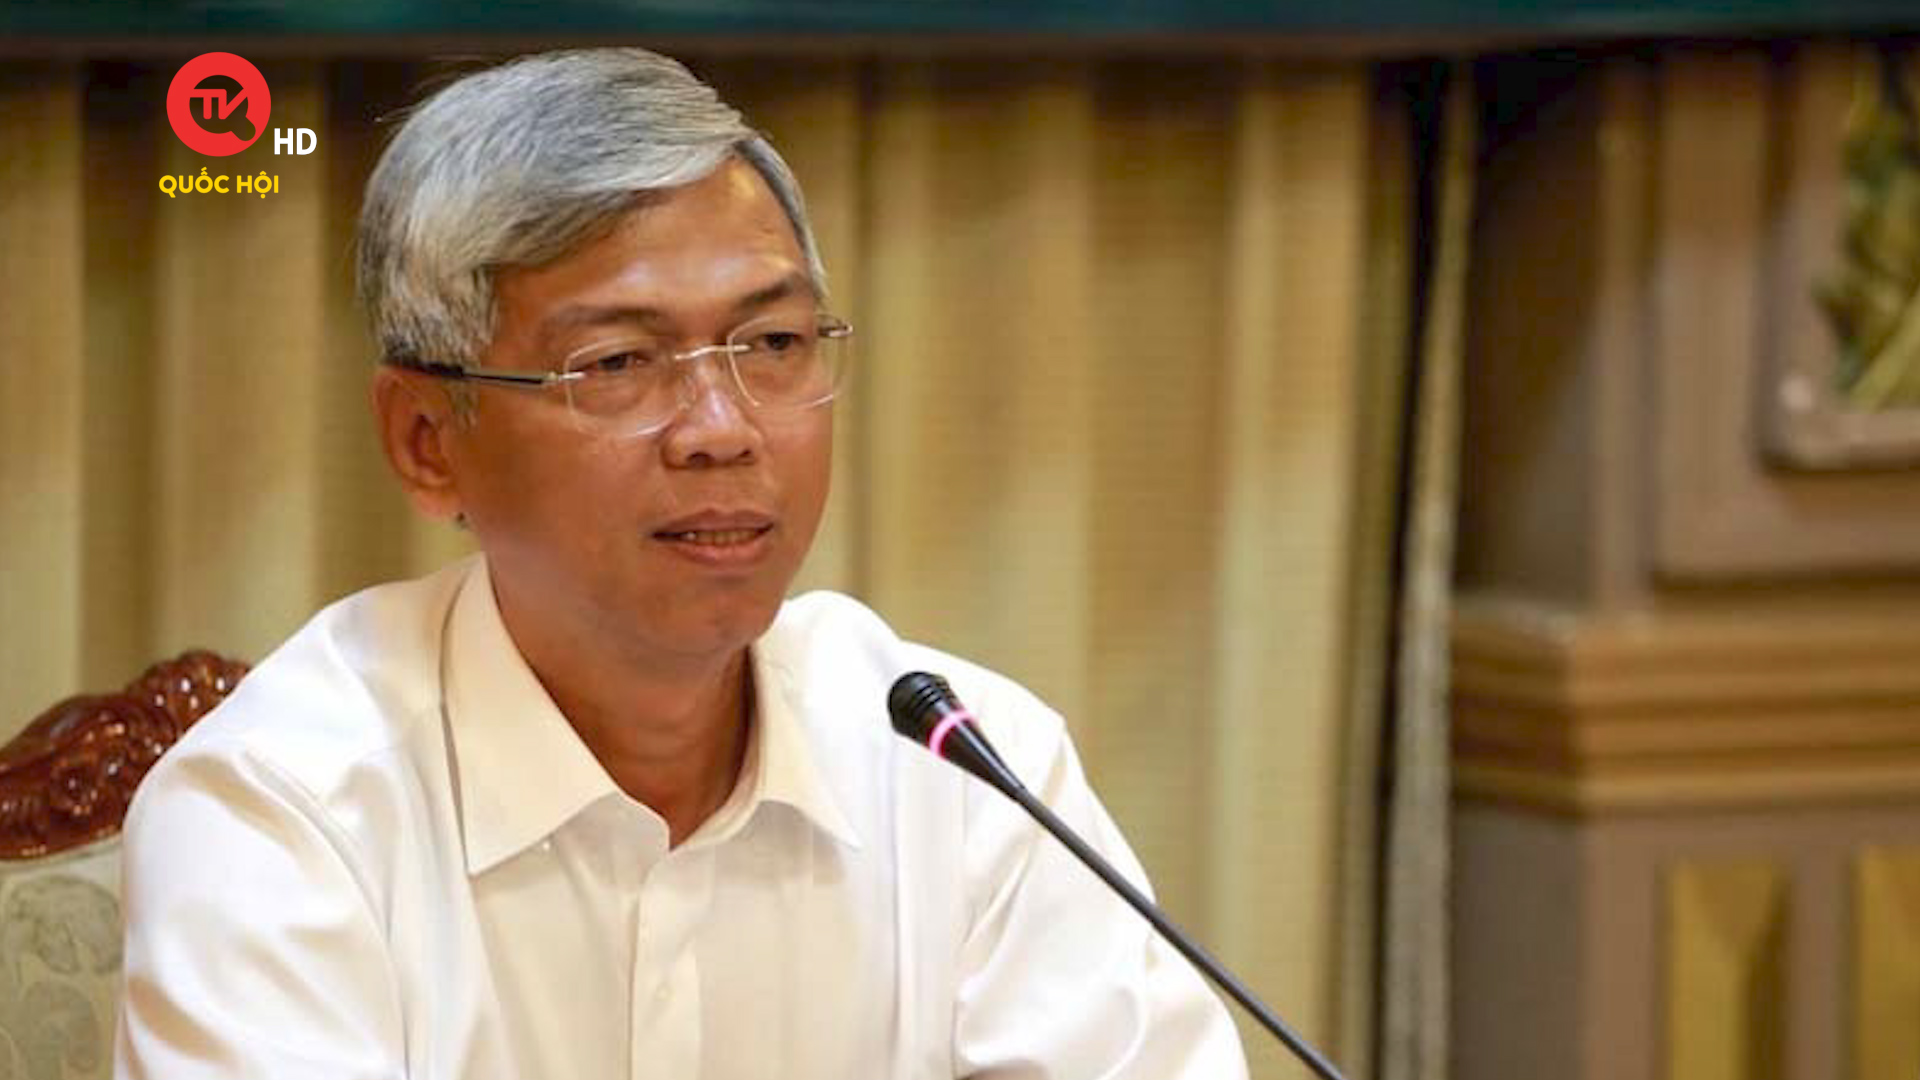 Phó Chủ tịch UBND TP.HCM Võ Văn Hoan bị kỷ luật khiển trách